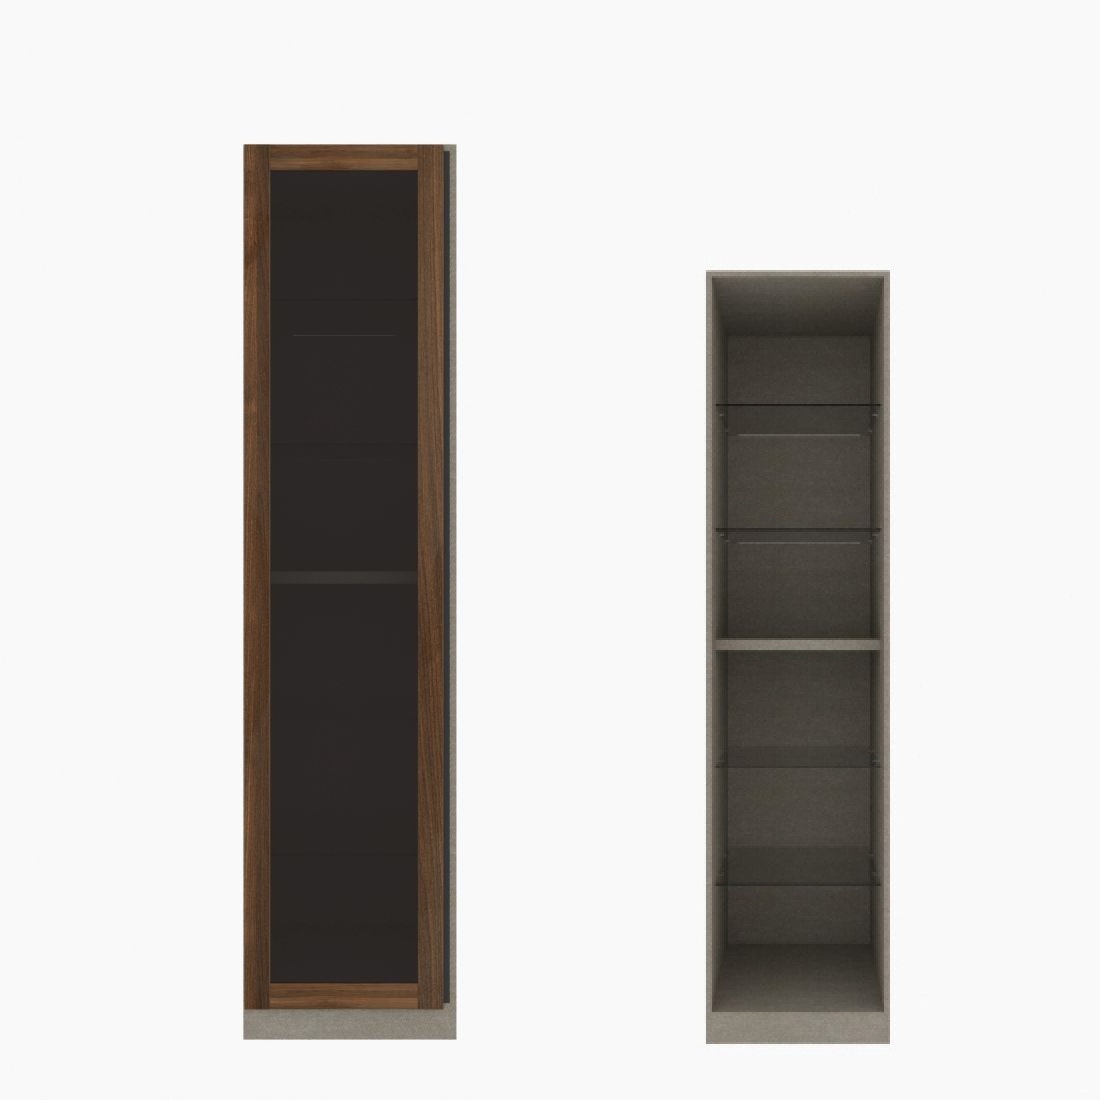 ตู้เสื้อผ้า ตู้โชว์ชั้นกระจก OP-H (หน้าบานเปิดซ้าย) ขนาด 50 ซม. รุ่น Blox สีไม้เข้ม&กระจกชาดำ01